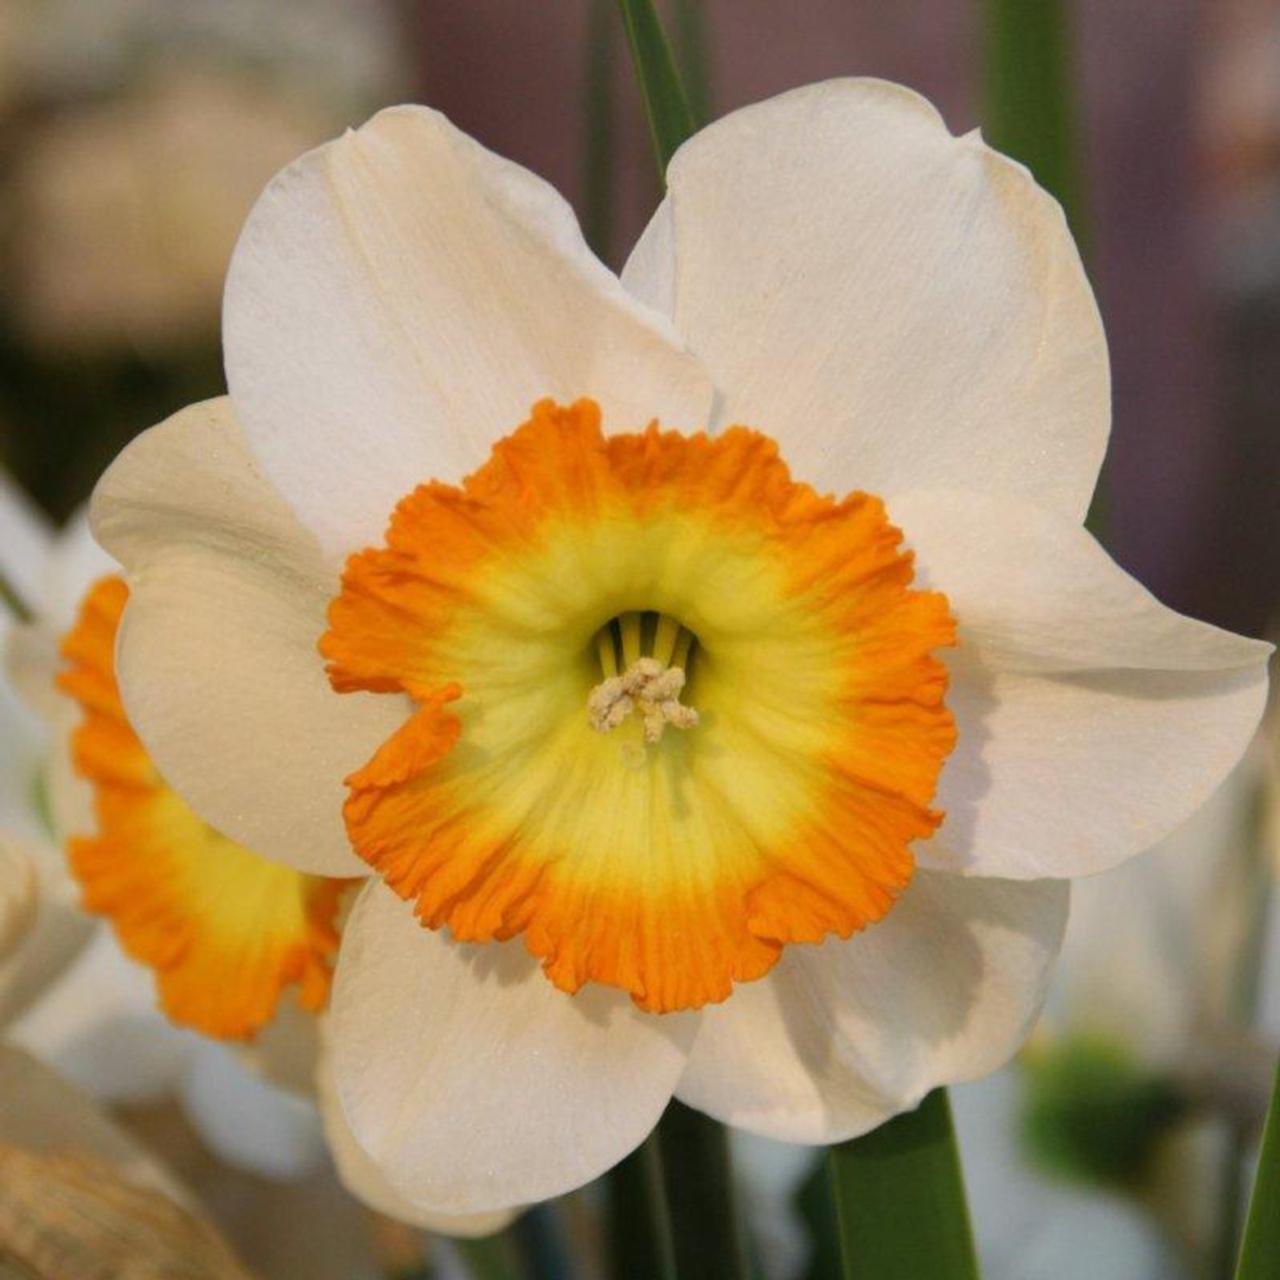 Narcissus 'Roulette' plant